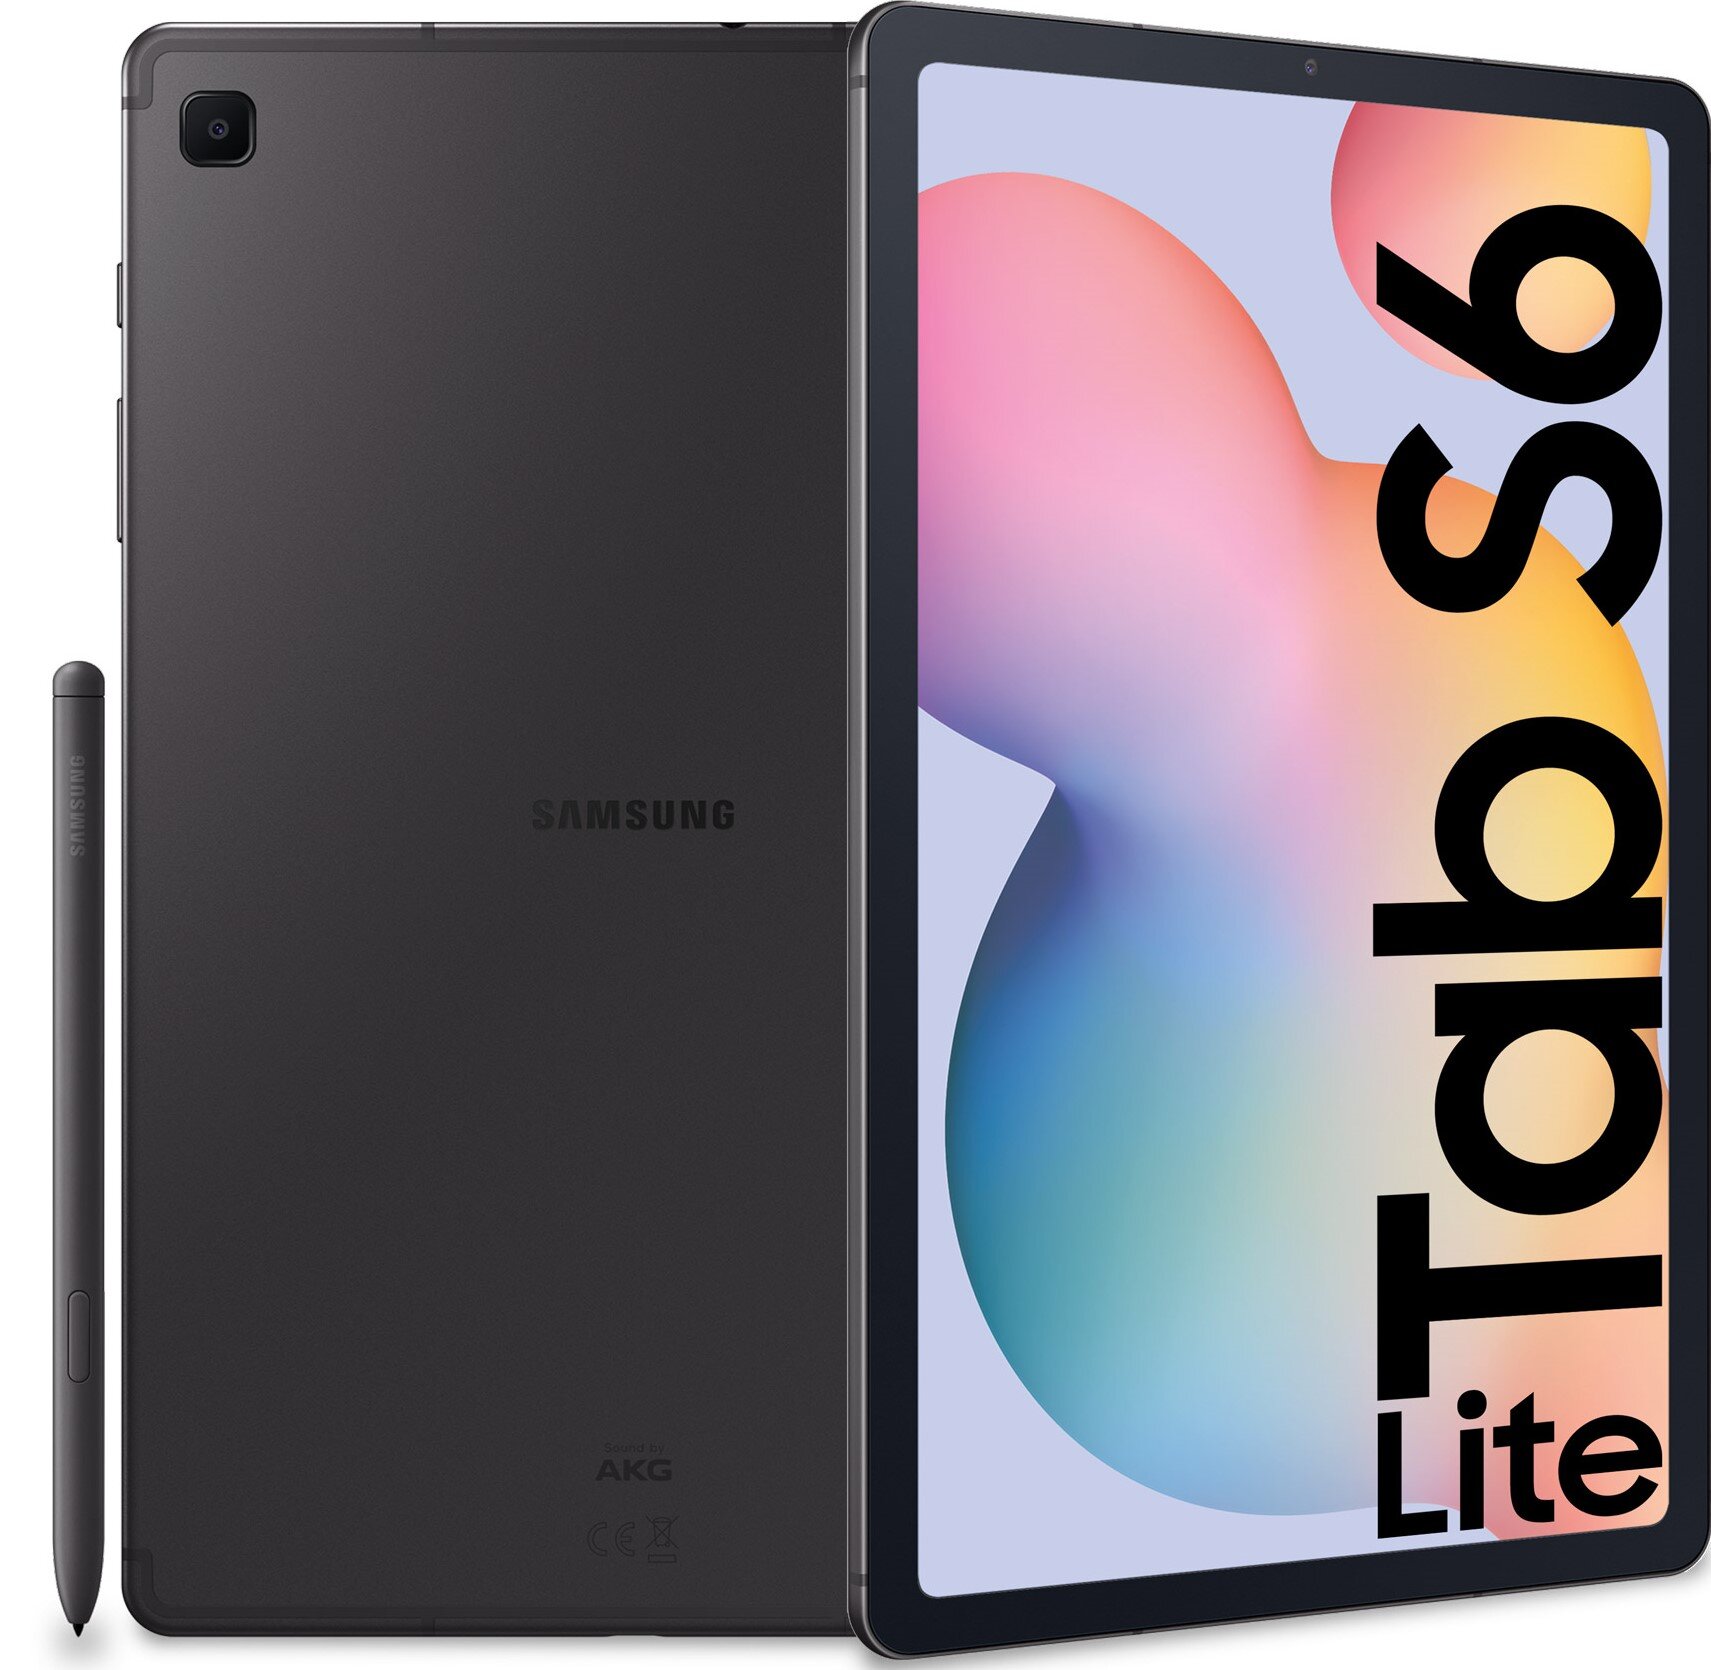 Samsung Galaxy Tab S6 Lite WiFi 64GB SM-P610NZA